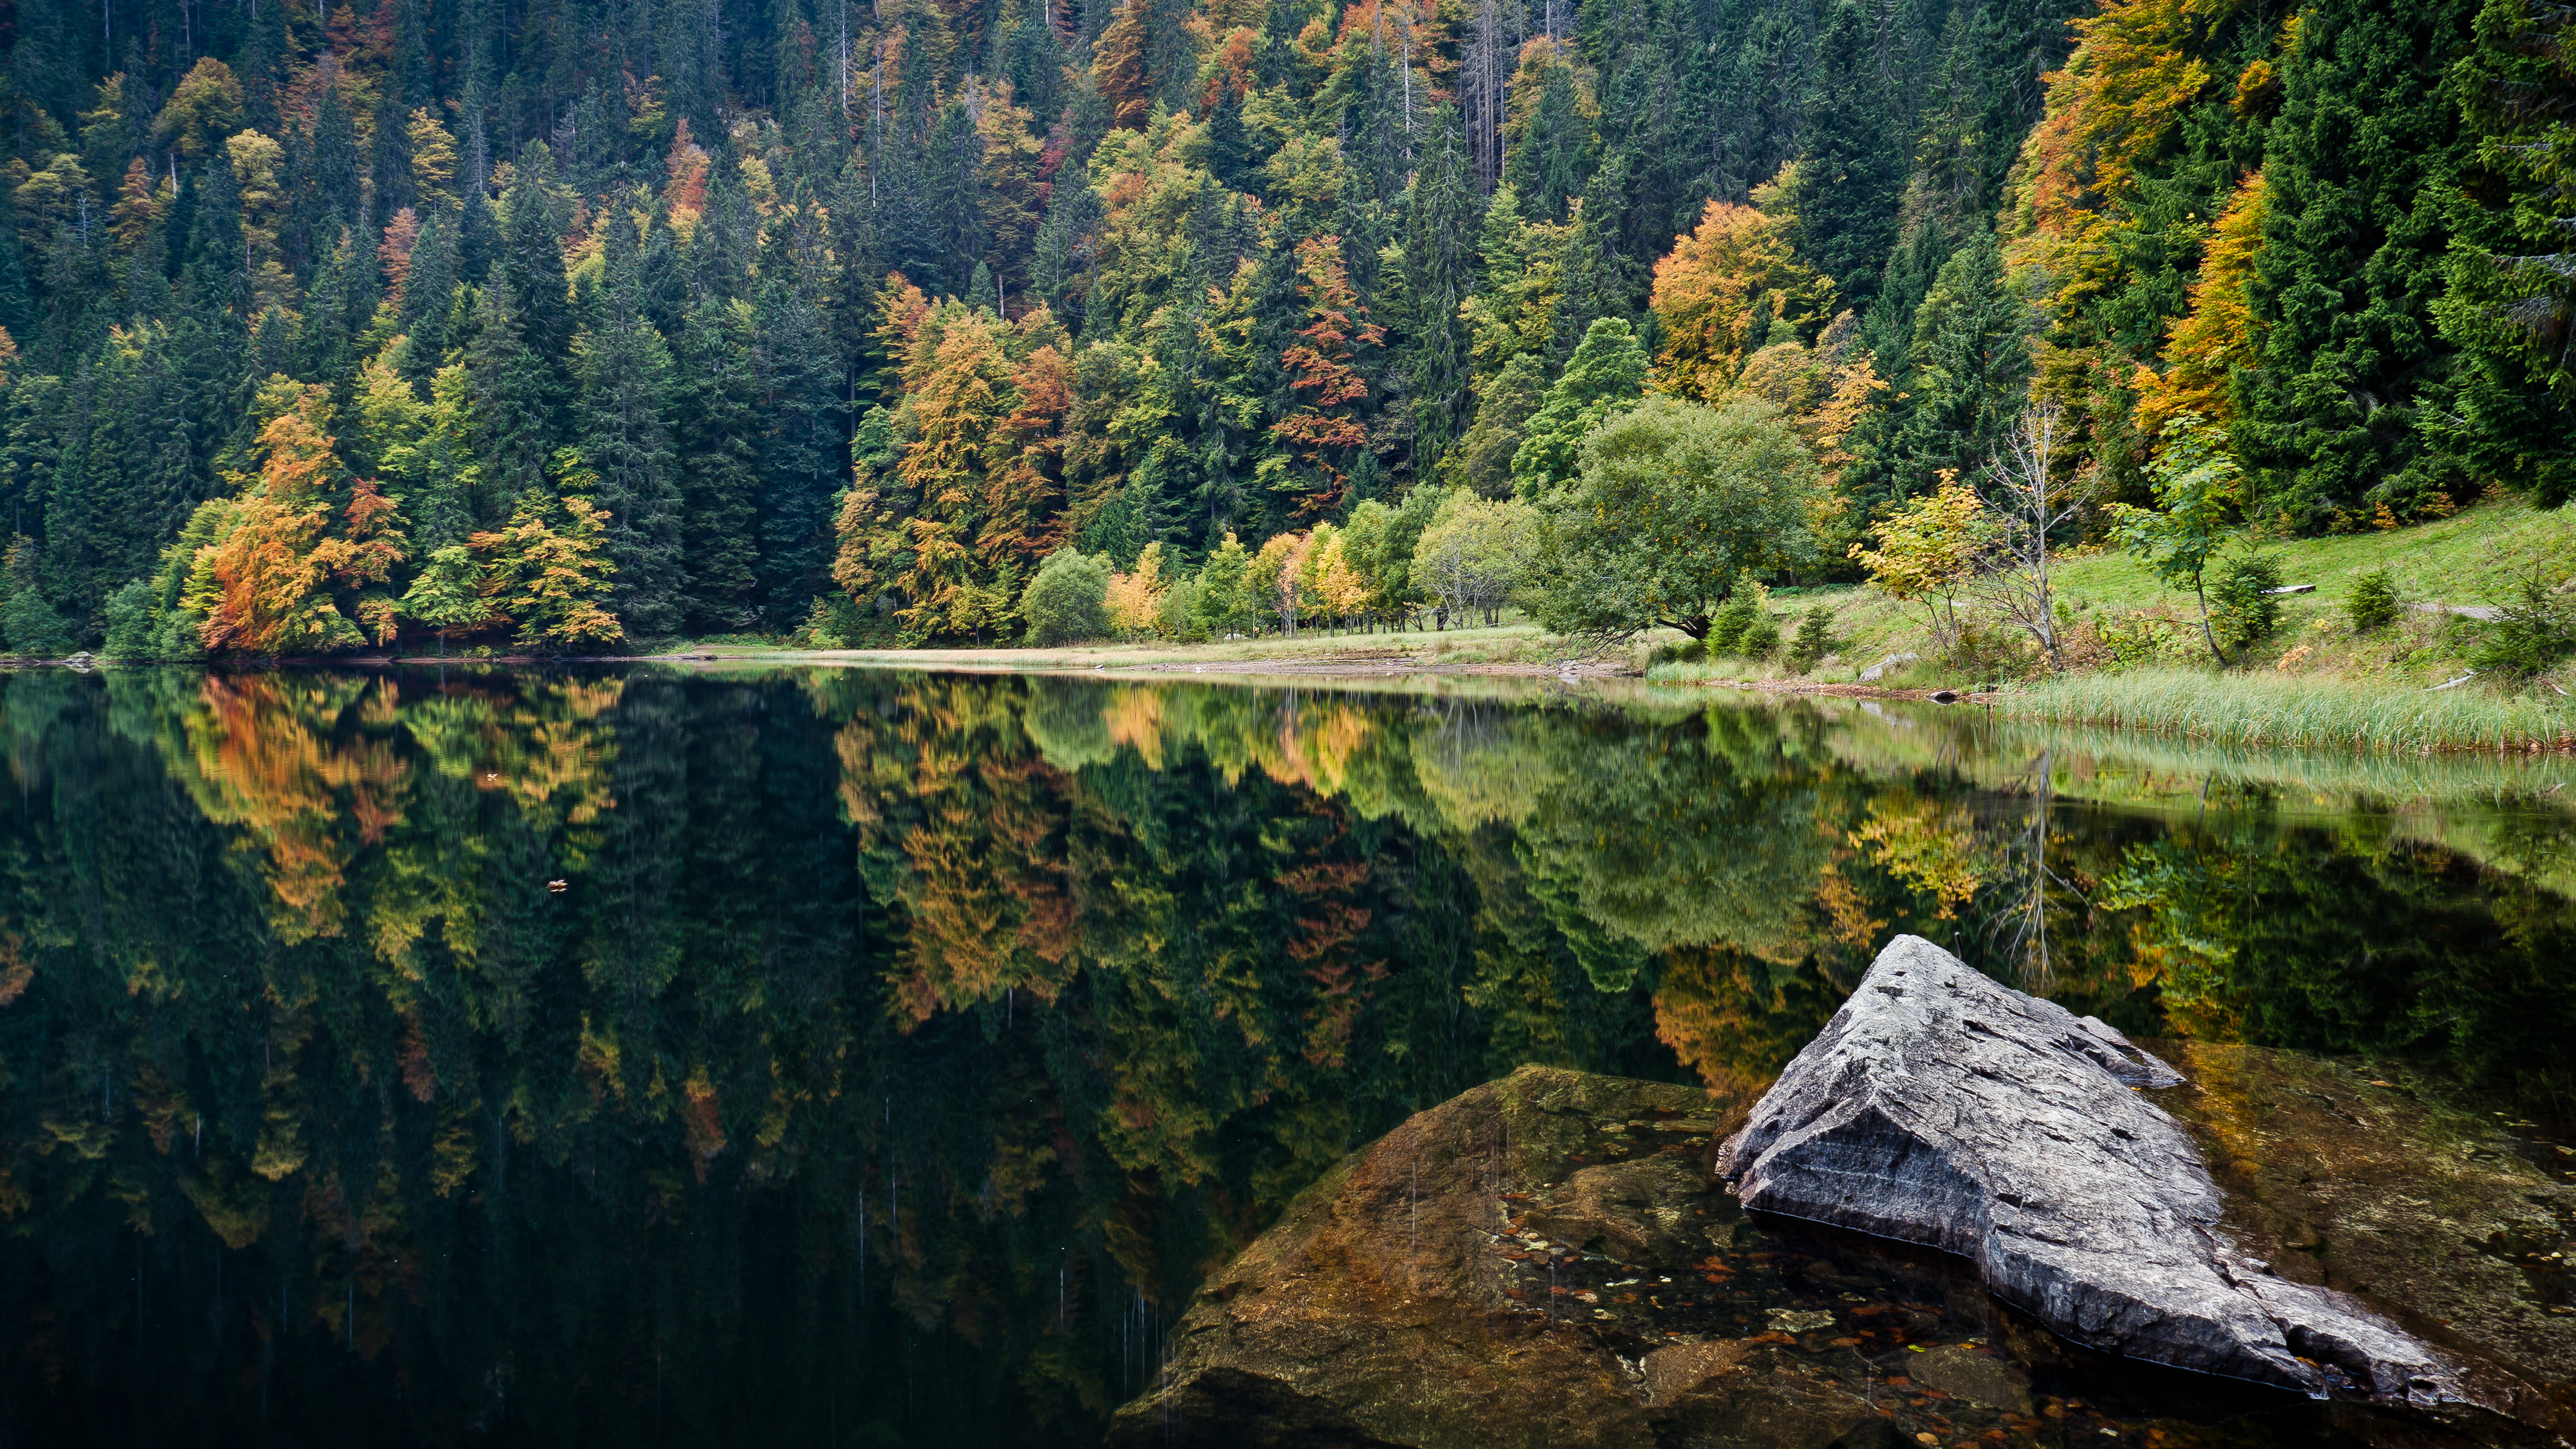 Картинка на обои высокого качества. Шварцвальд озеро. Шварцвальд Германия осень. Шварцвальд осенью. Баварский лес в Германии.